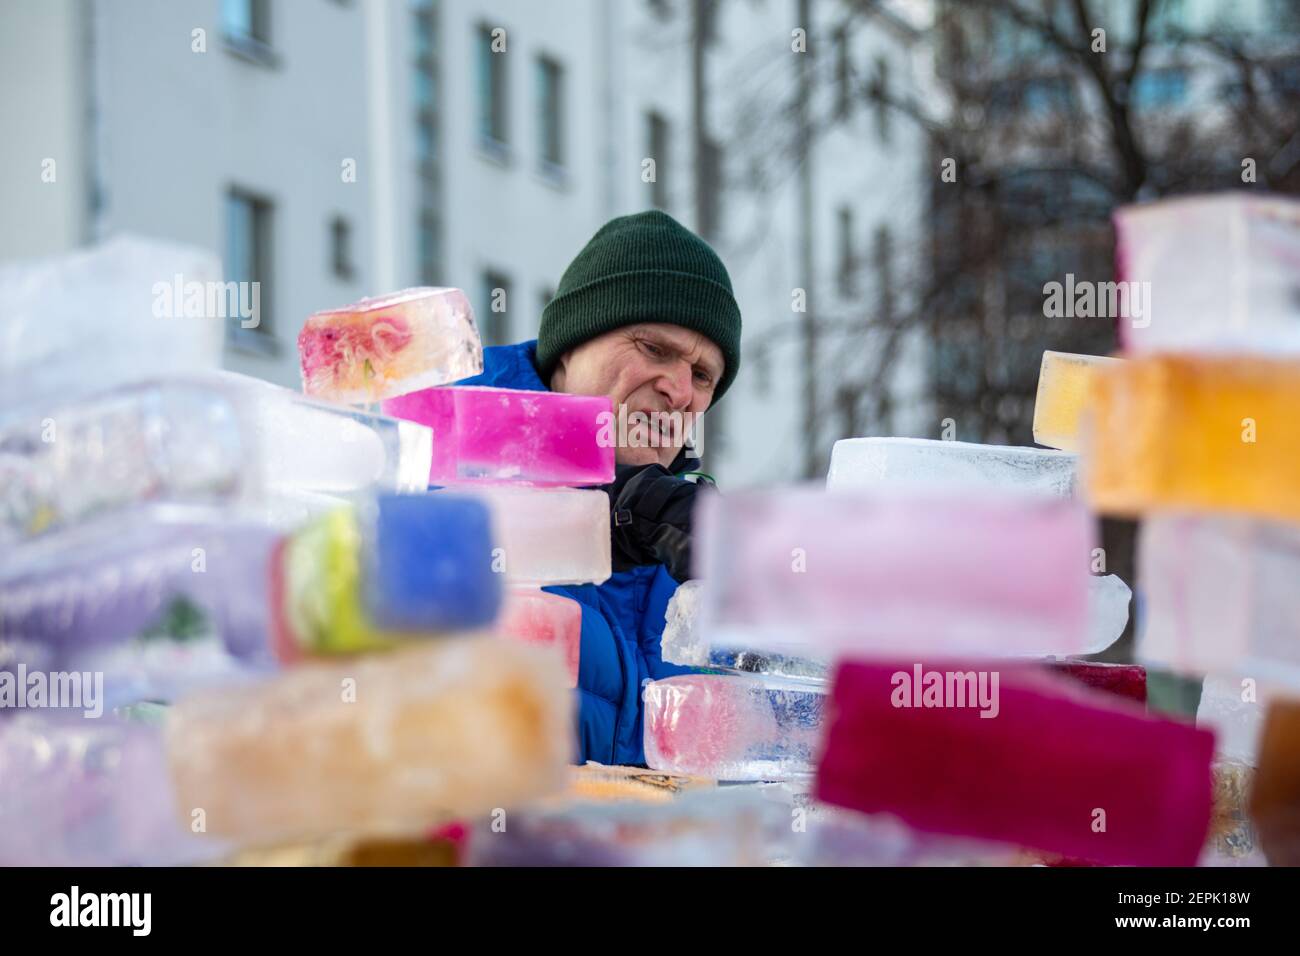 Homme participant à un projet communautaire de construction d'un château de glace ou d'une forteresse à partir de briques de glace colorées ou de blocs à Munkkiniemi, Helsinki, Finlande Banque D'Images